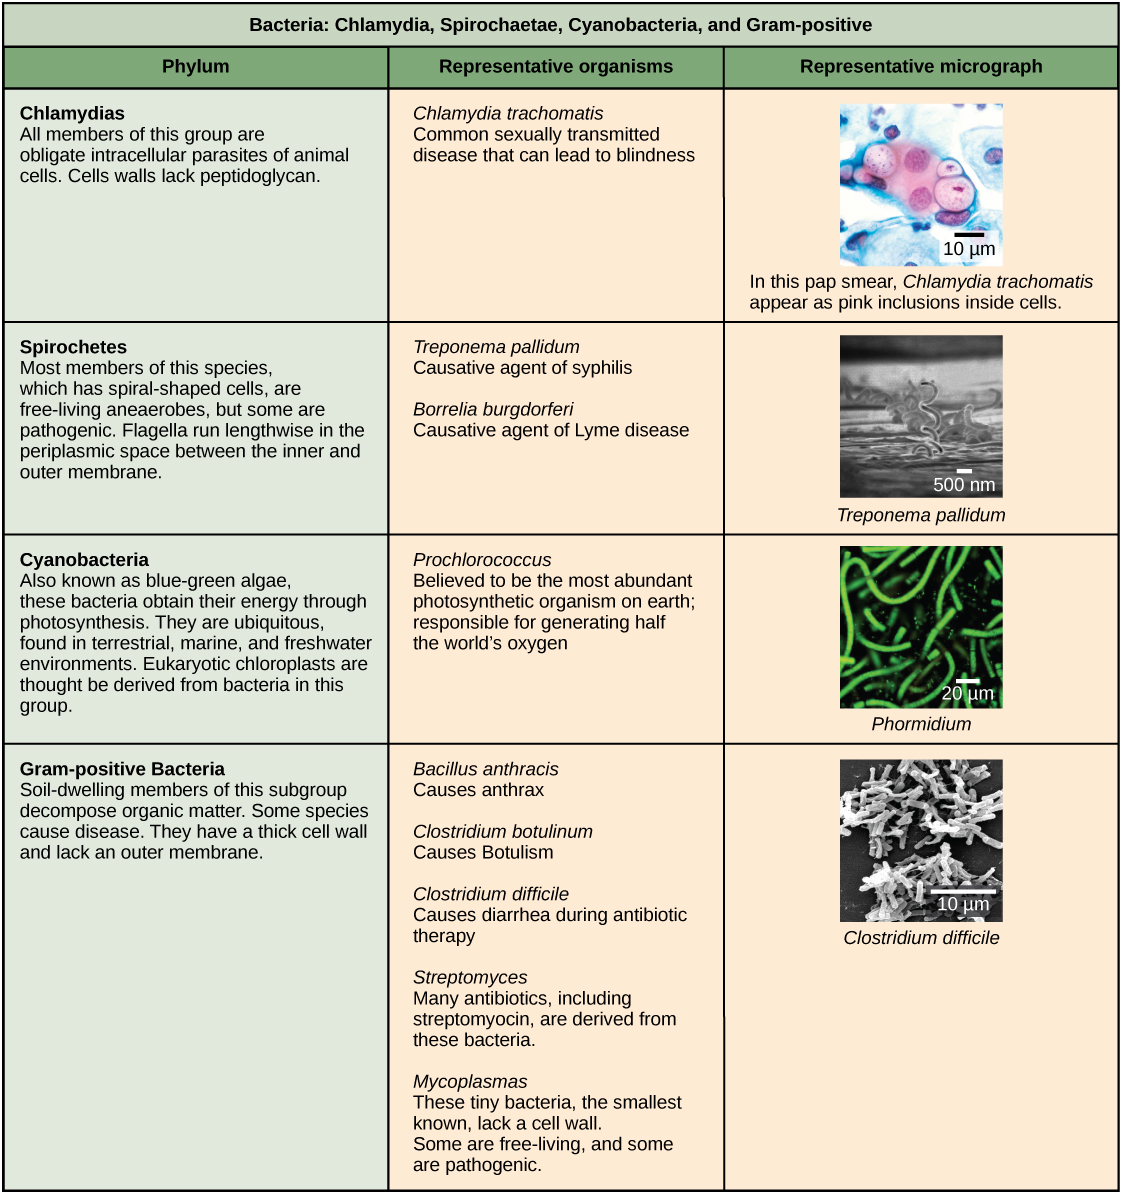 טבלה זו המתארת ארבעה סוגים של חיידקים, כלמידיה, Spirochaetae, ציאנובקטריה וגראם חיובי. הטבלה מאורגנת על ידי פילום, האורגניזמים המייצגים שלהם ומיקרוגרף מייצג